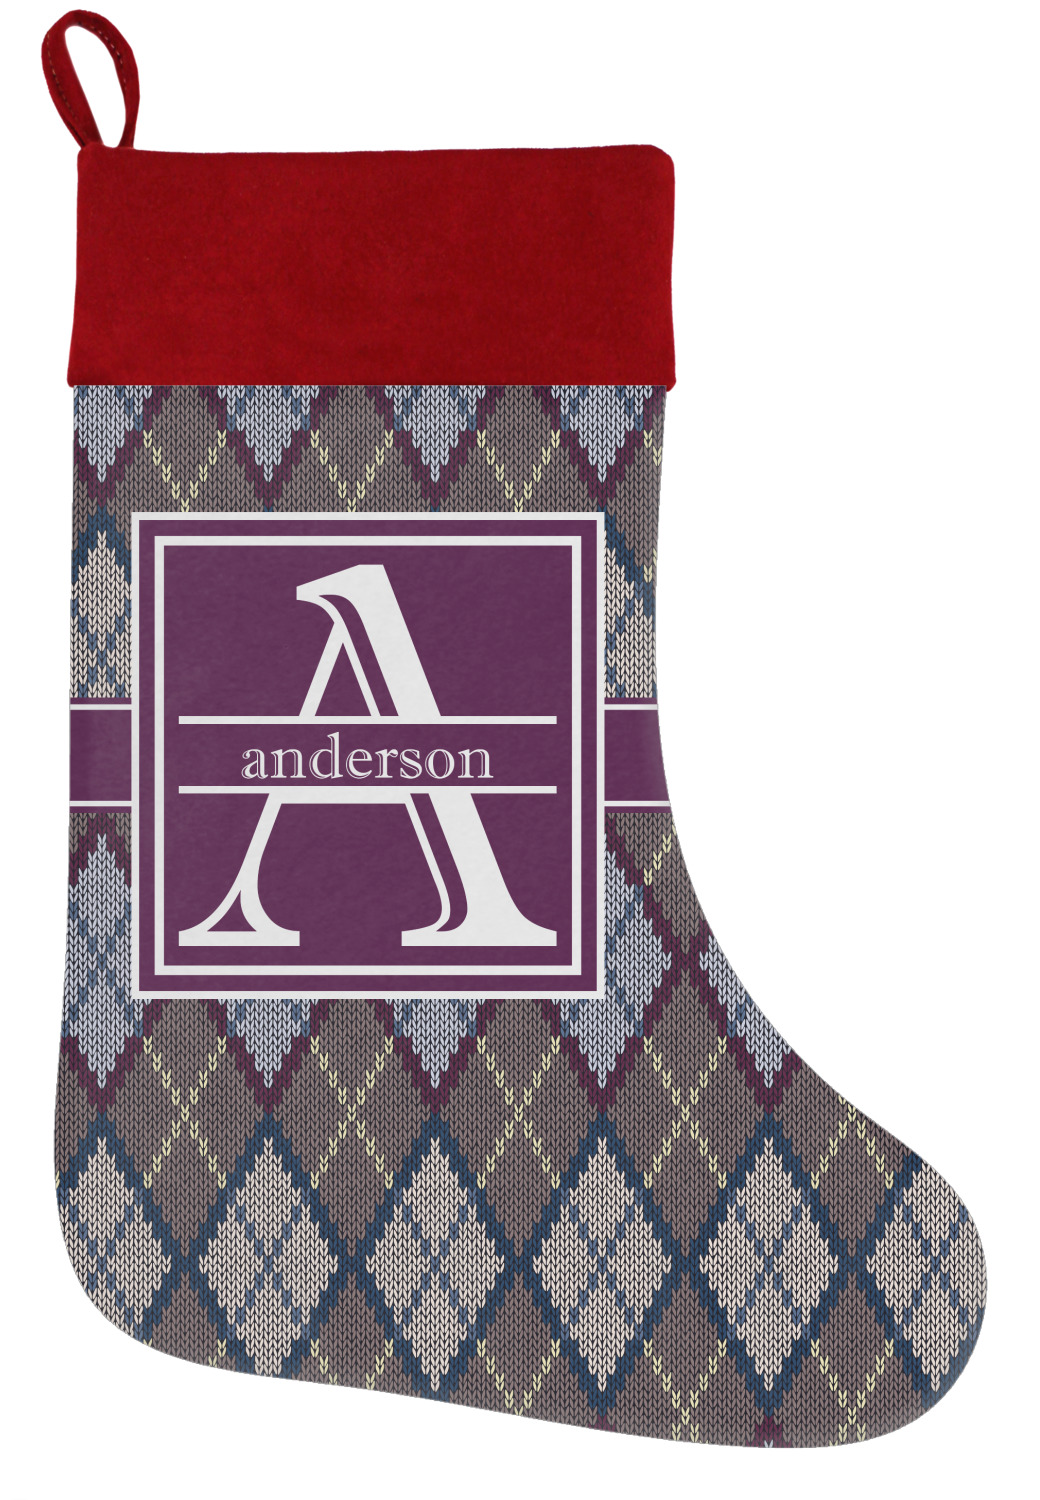 Knit Argyle Holiday Christmas Stocking Personalized